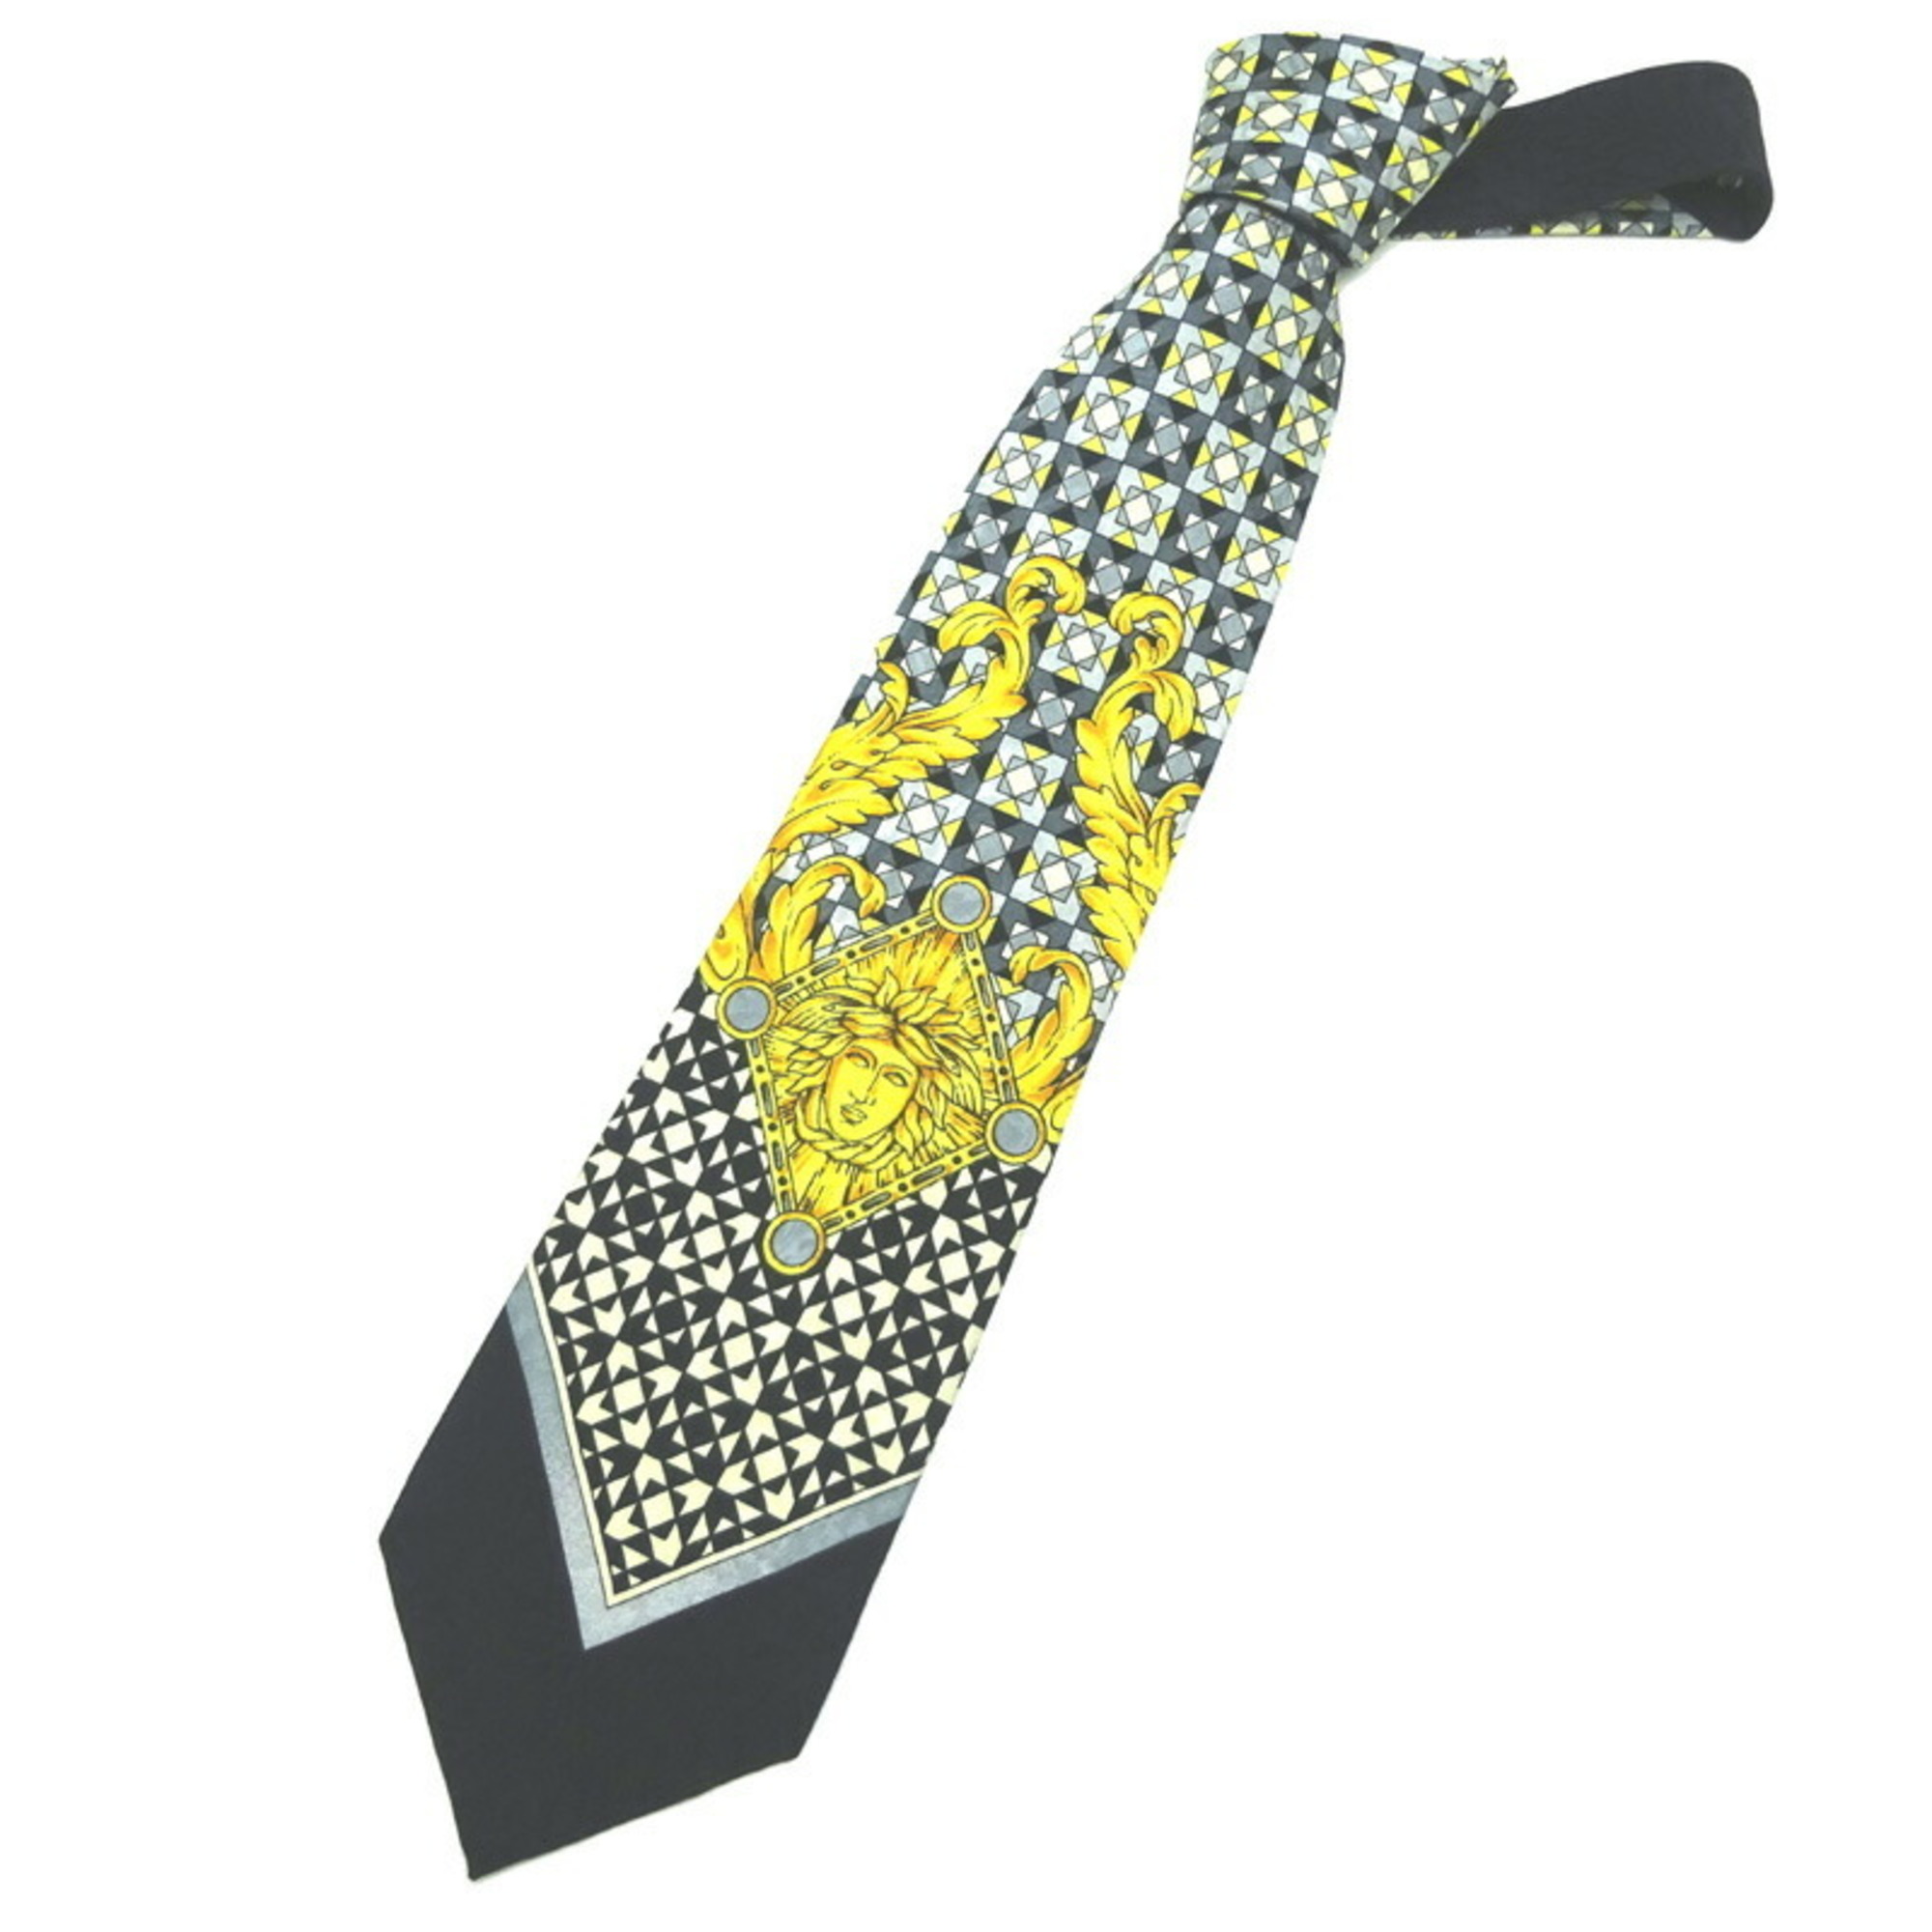 Versace Men's Tie 100% Silk Black/Yellow